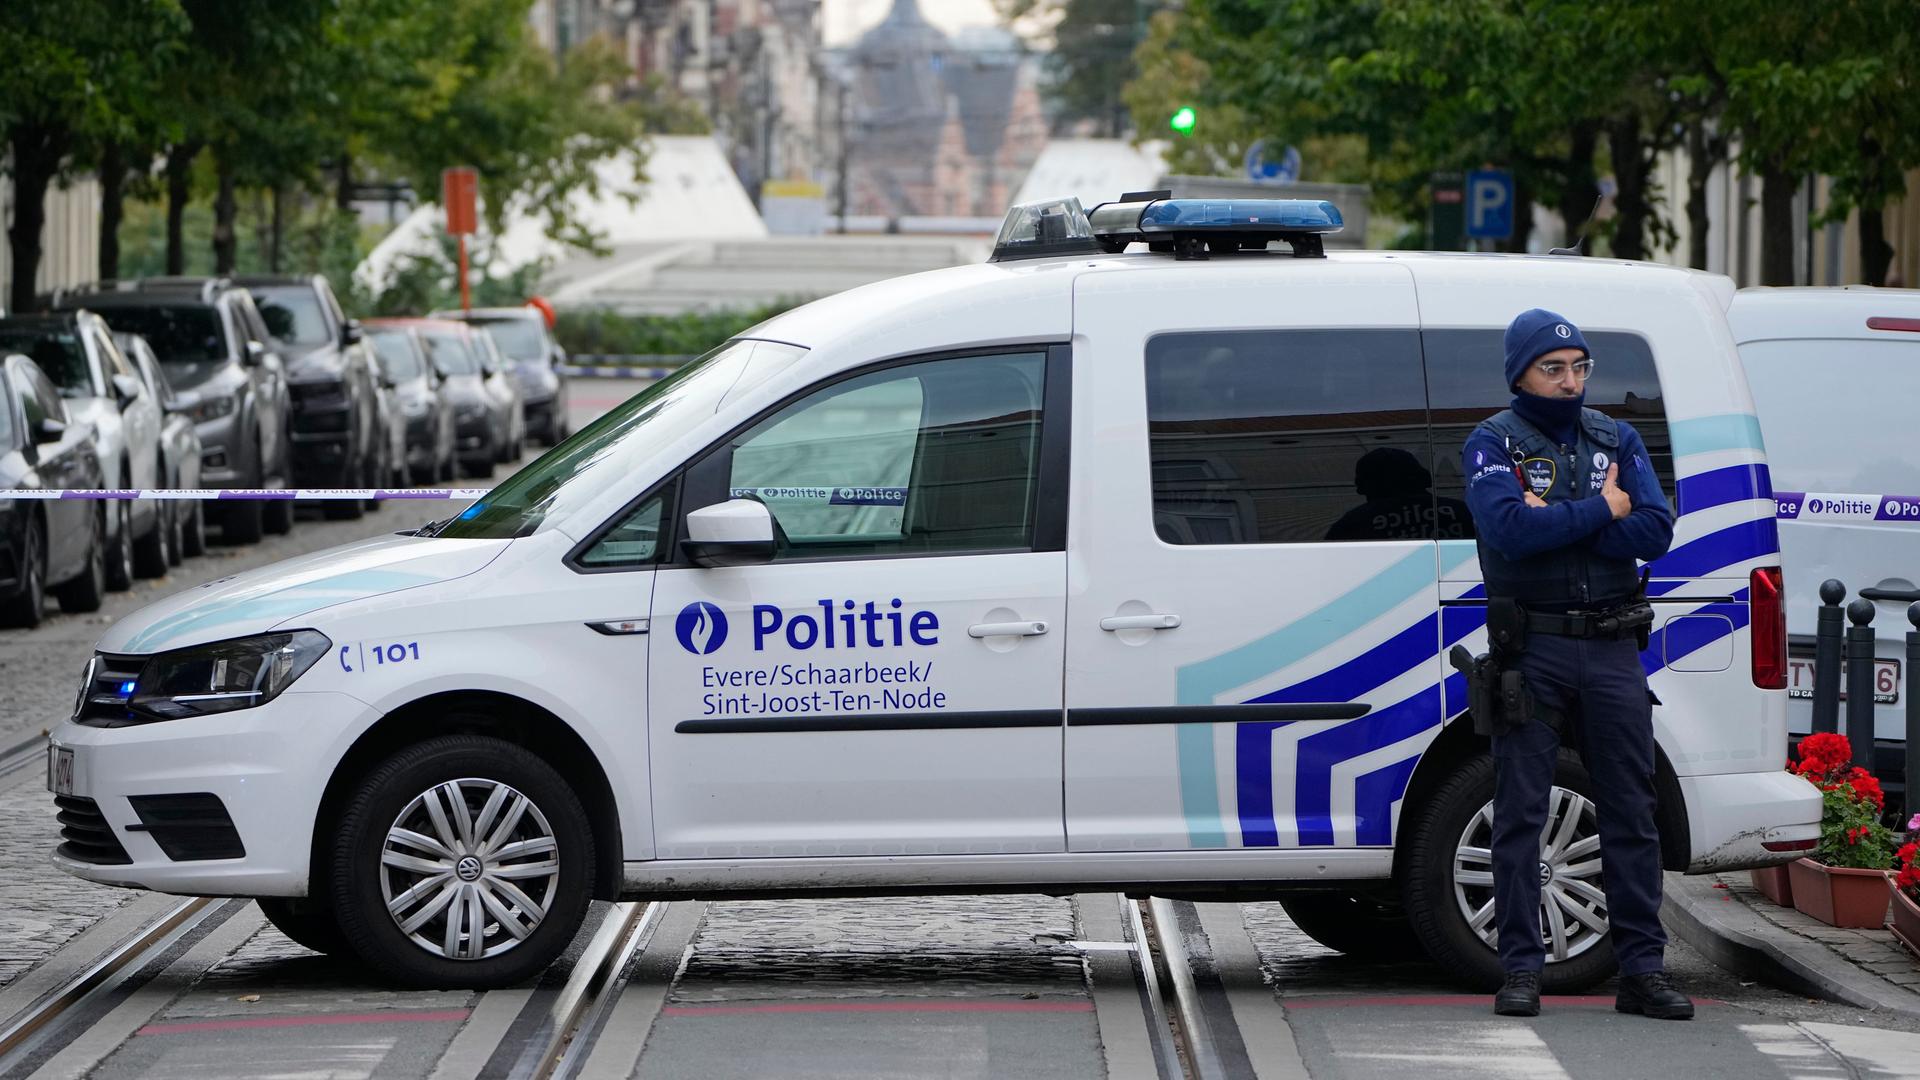 Auf dem Bild sieht man ein belgisches Polizei-Auto. Hinter dem Auto ist die Strasse abgeriegelt. 